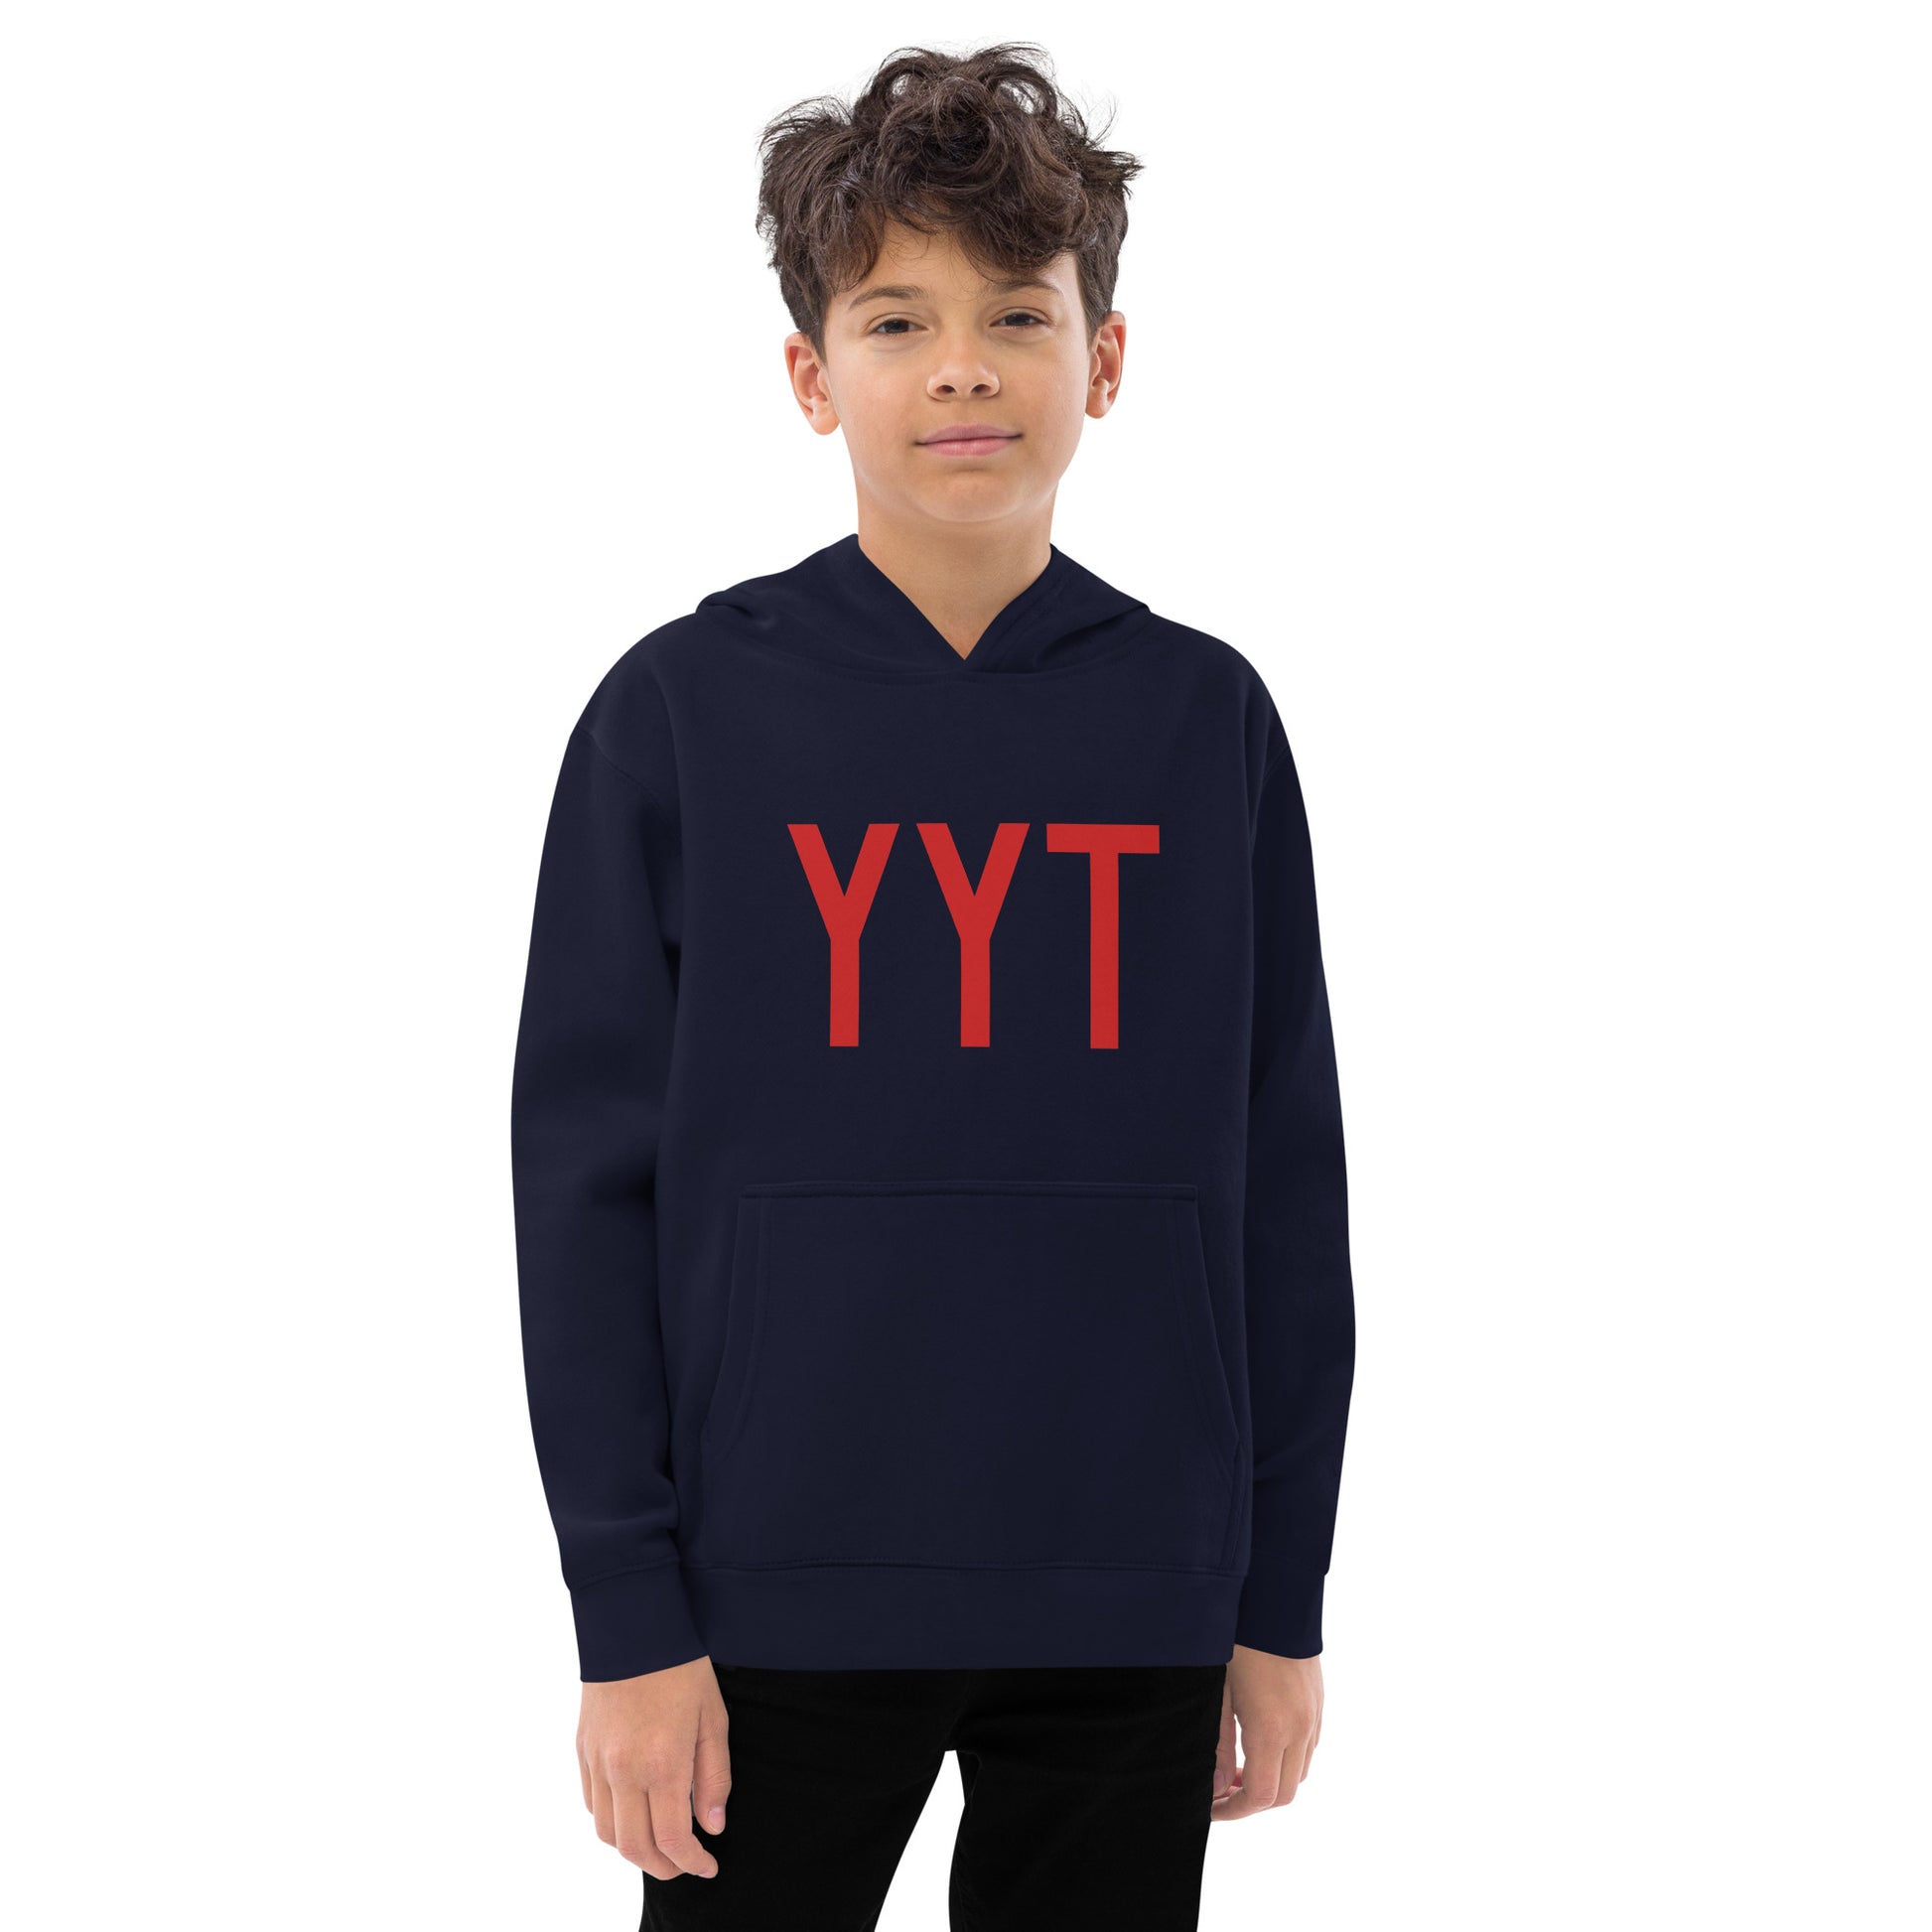 Airport Code Kid's Hoodie • YYT St. John's • YHM Designs - Image 07